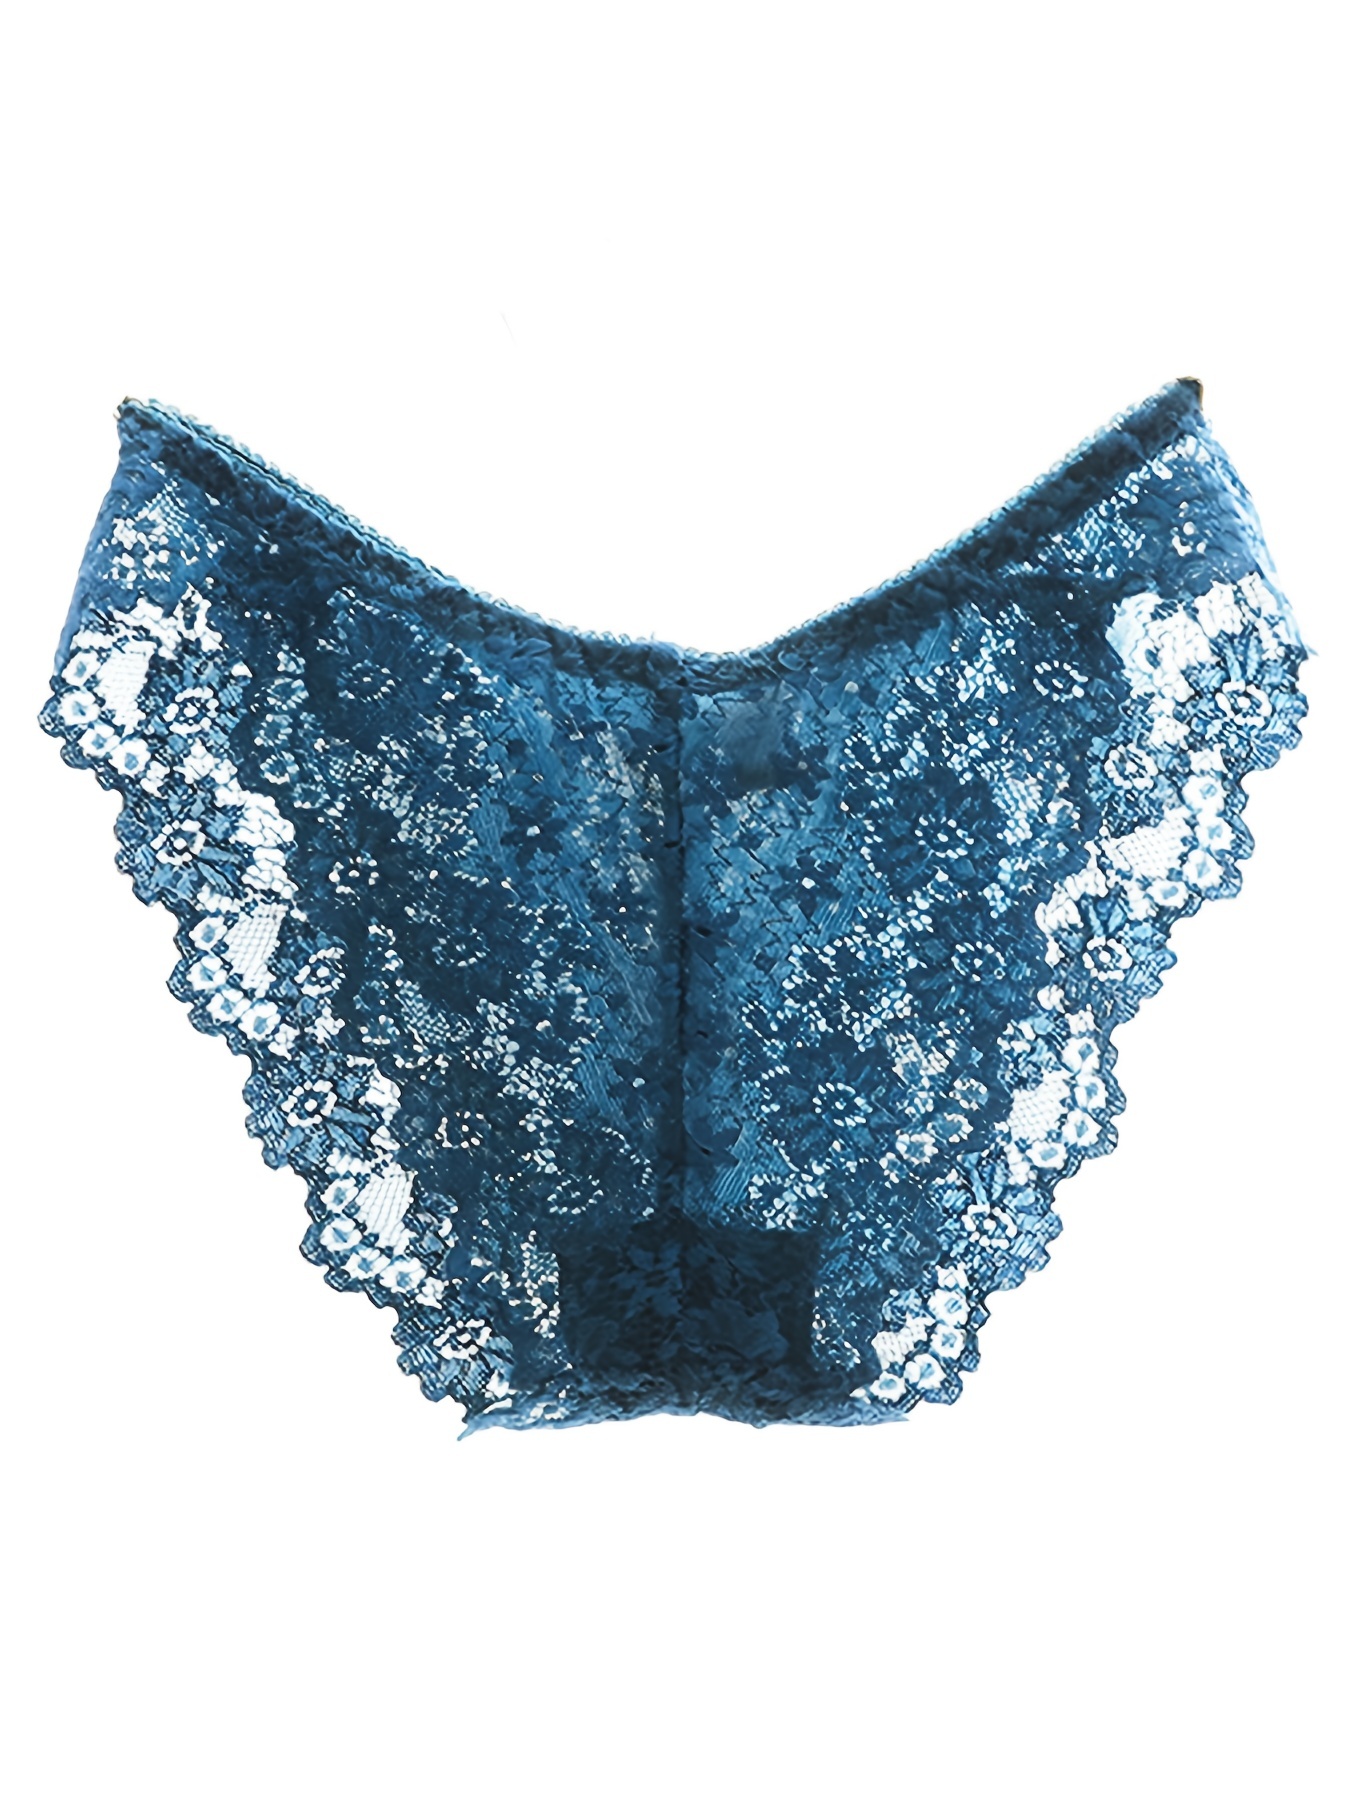 Plain sheer mesh high-cut bikini panty, Miiyu, Shop Bikini Panties Online